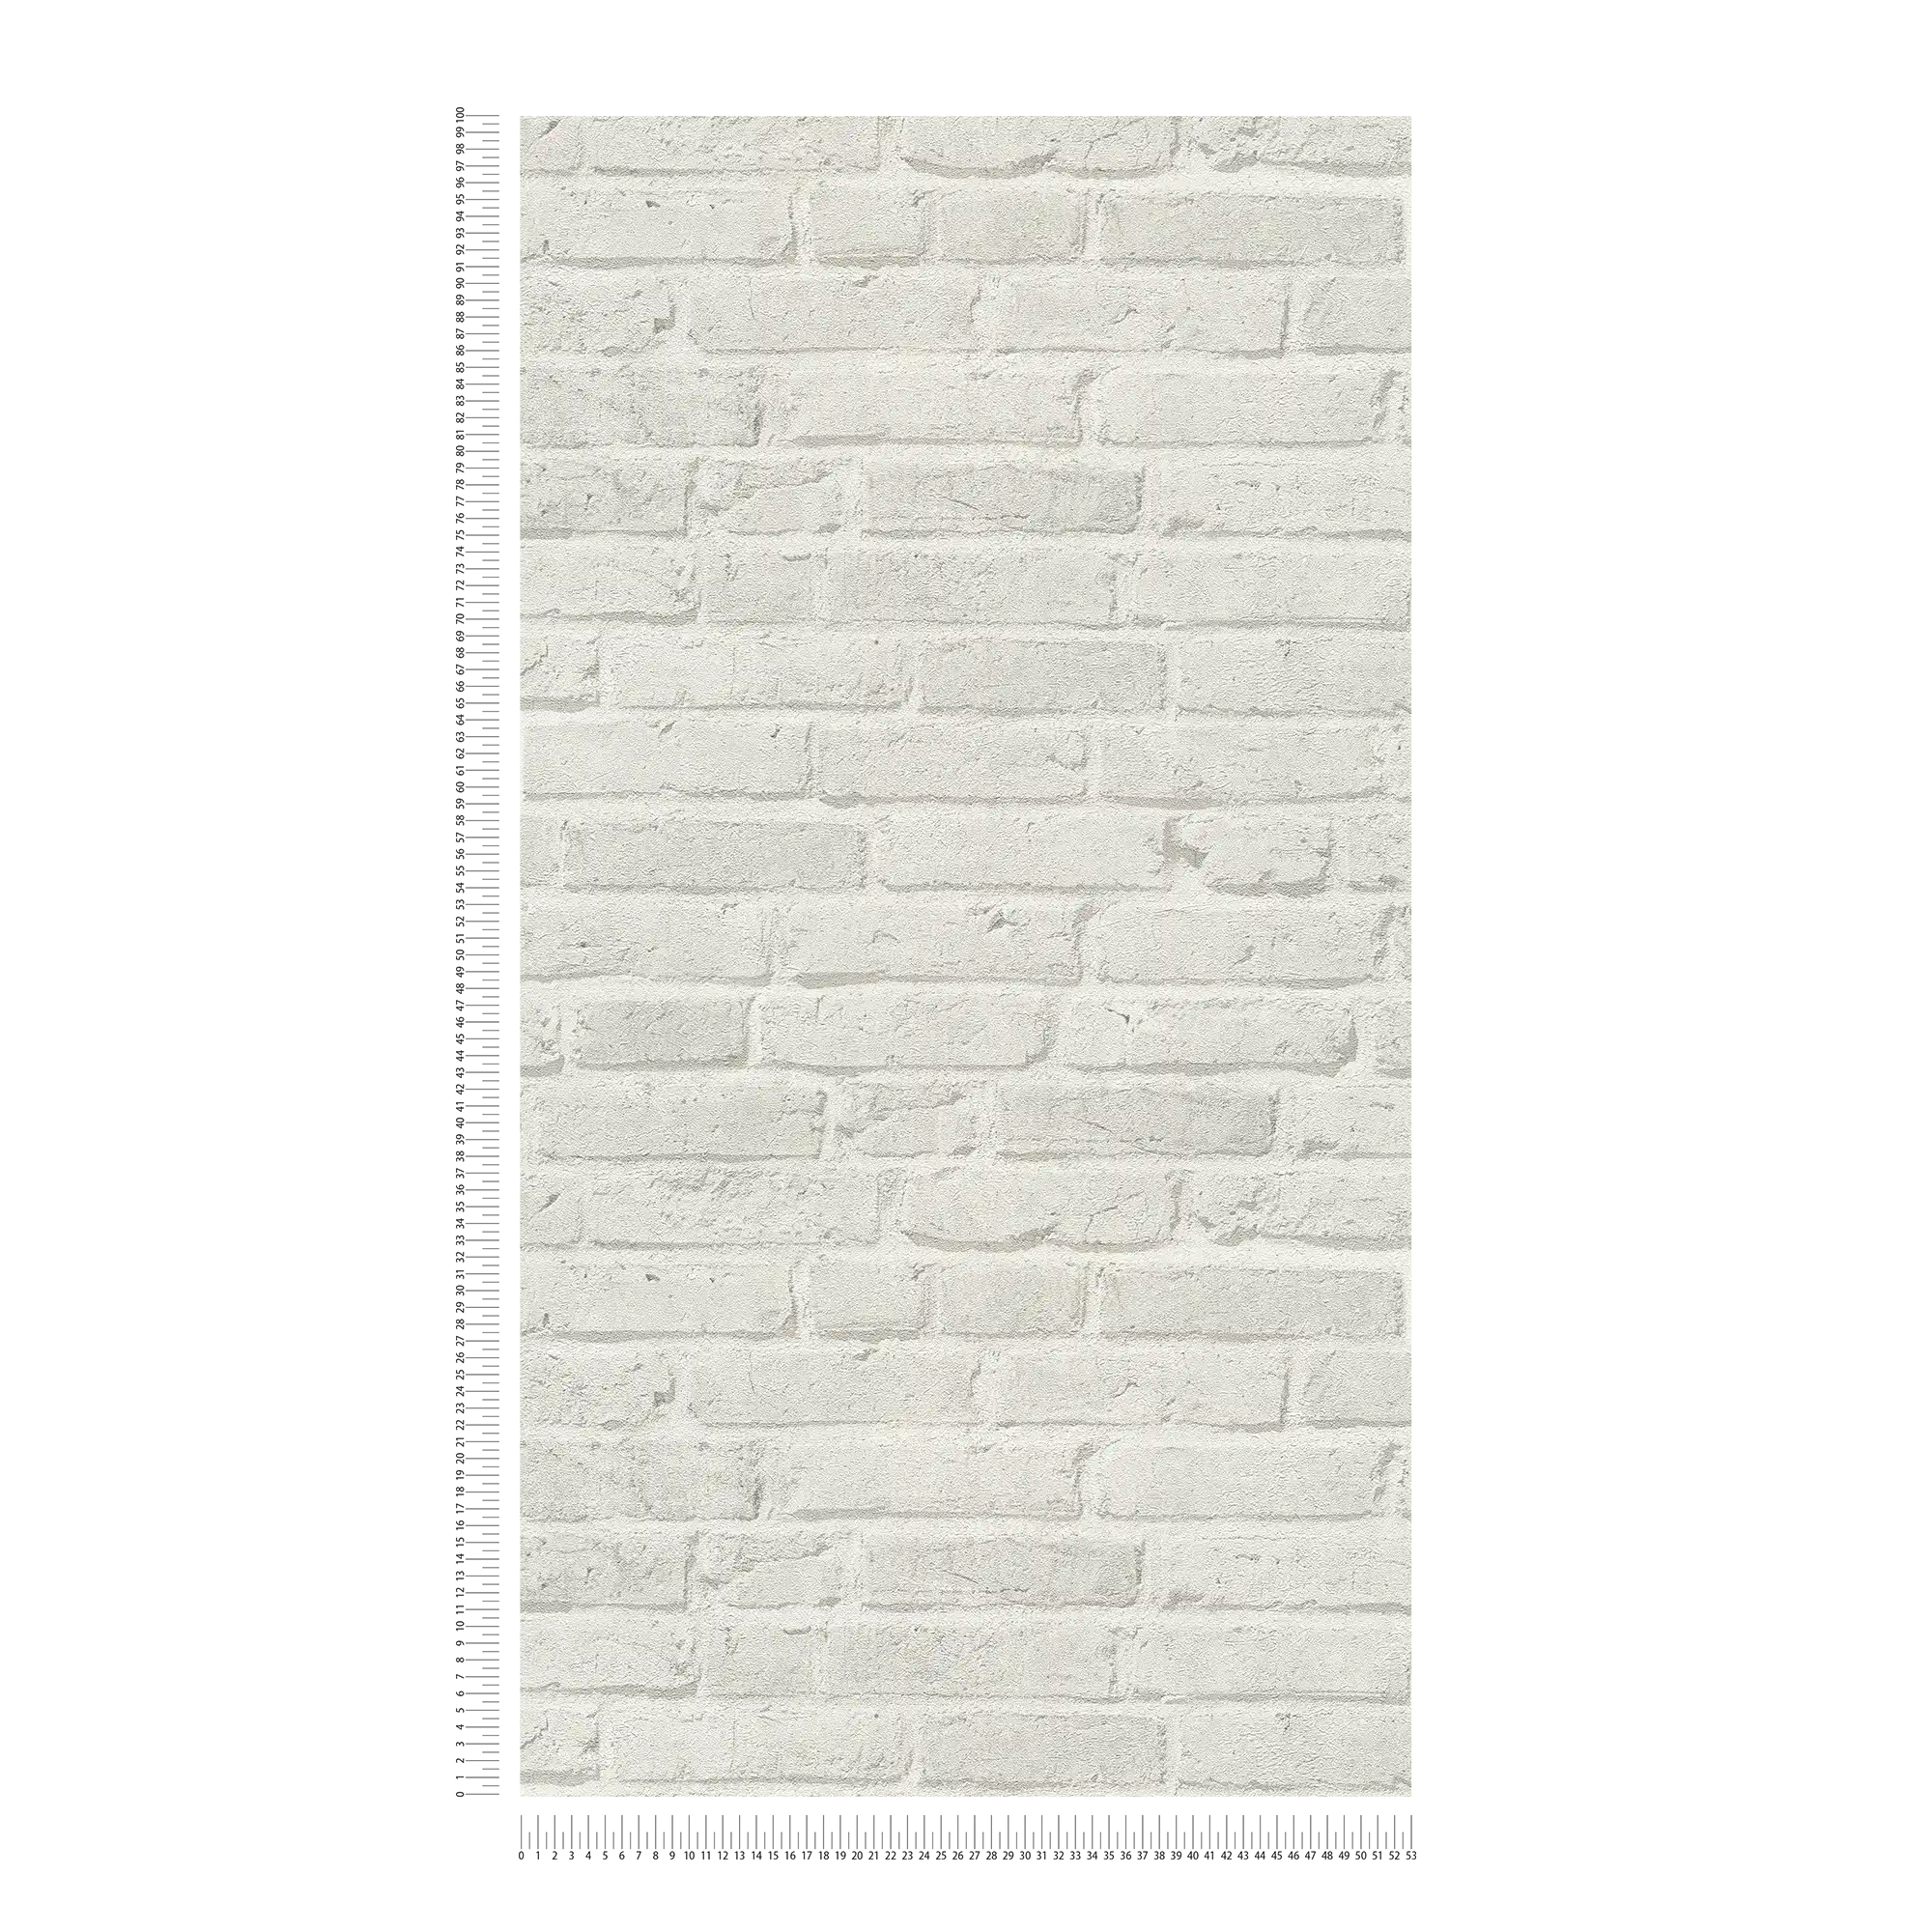             Papier peint brique avec effet de mur & motif structuré - Gris
        